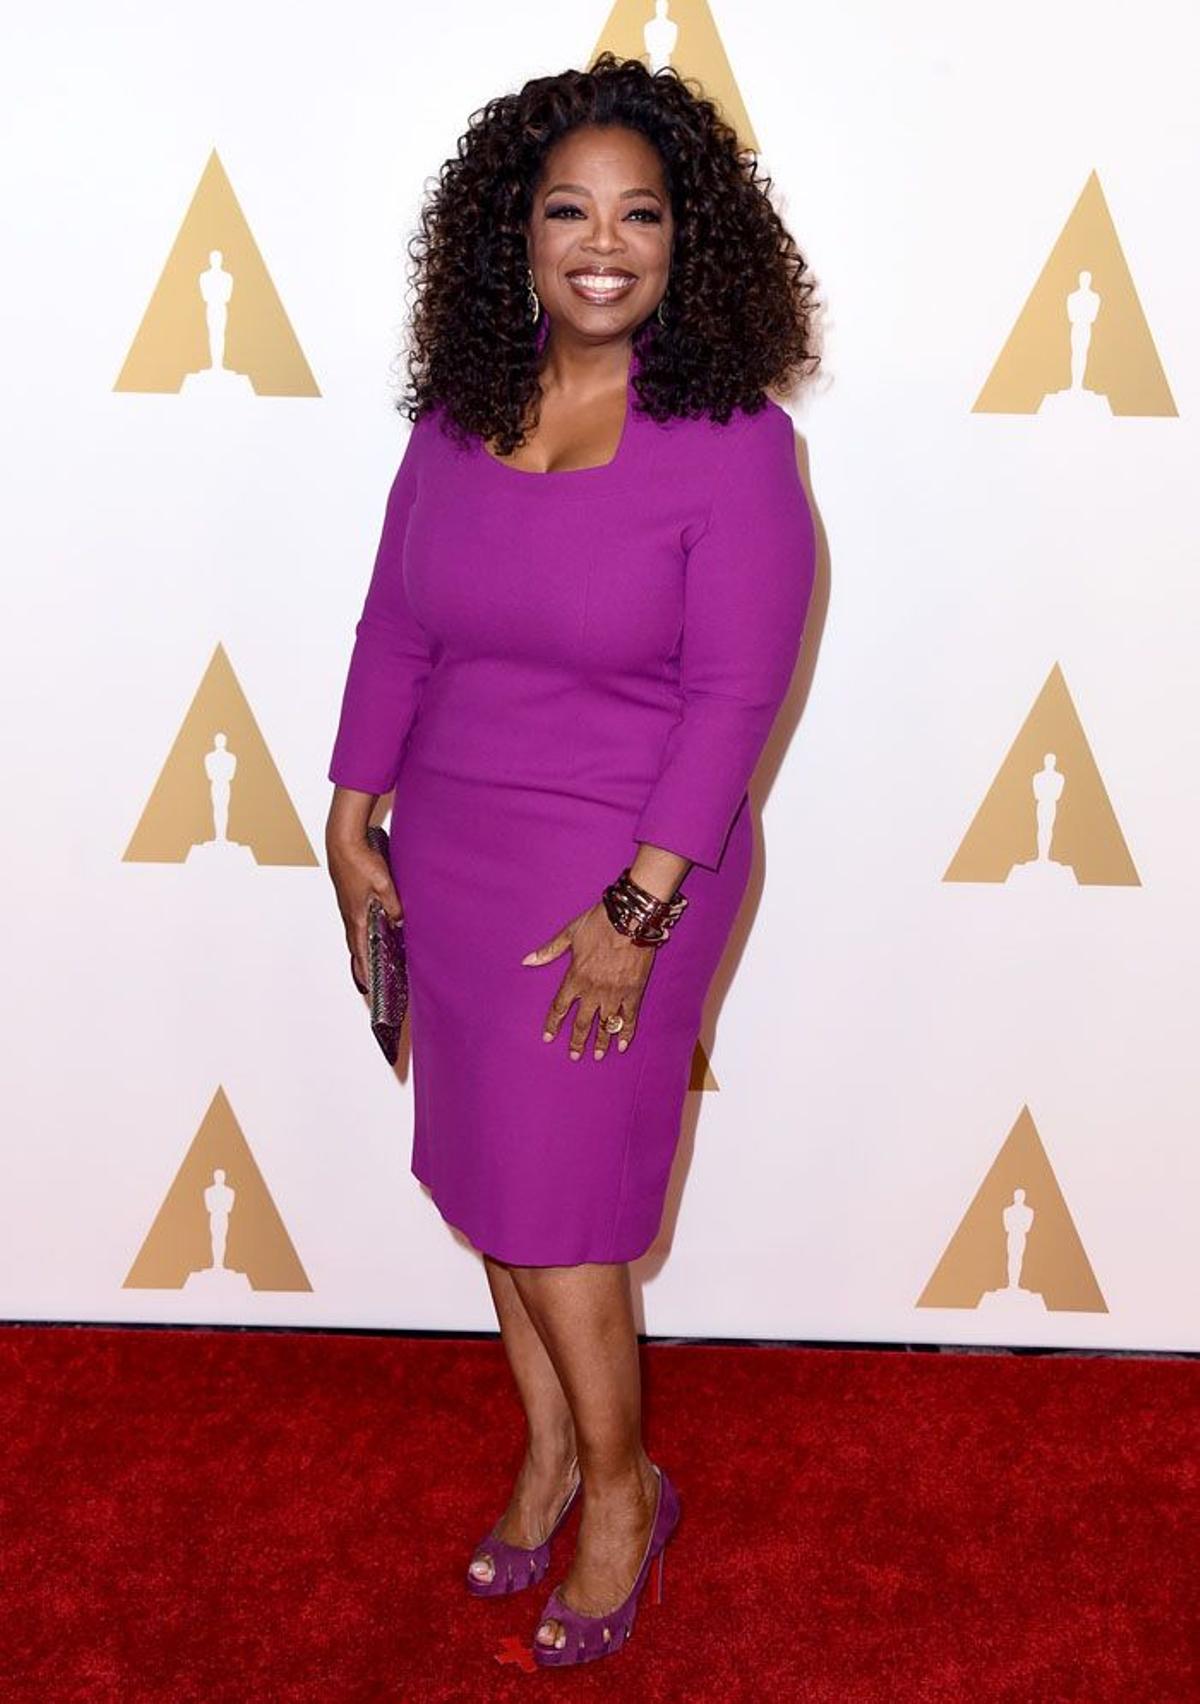 Almuerzo de los nominados Oscar 2015: Oprah Winfrey